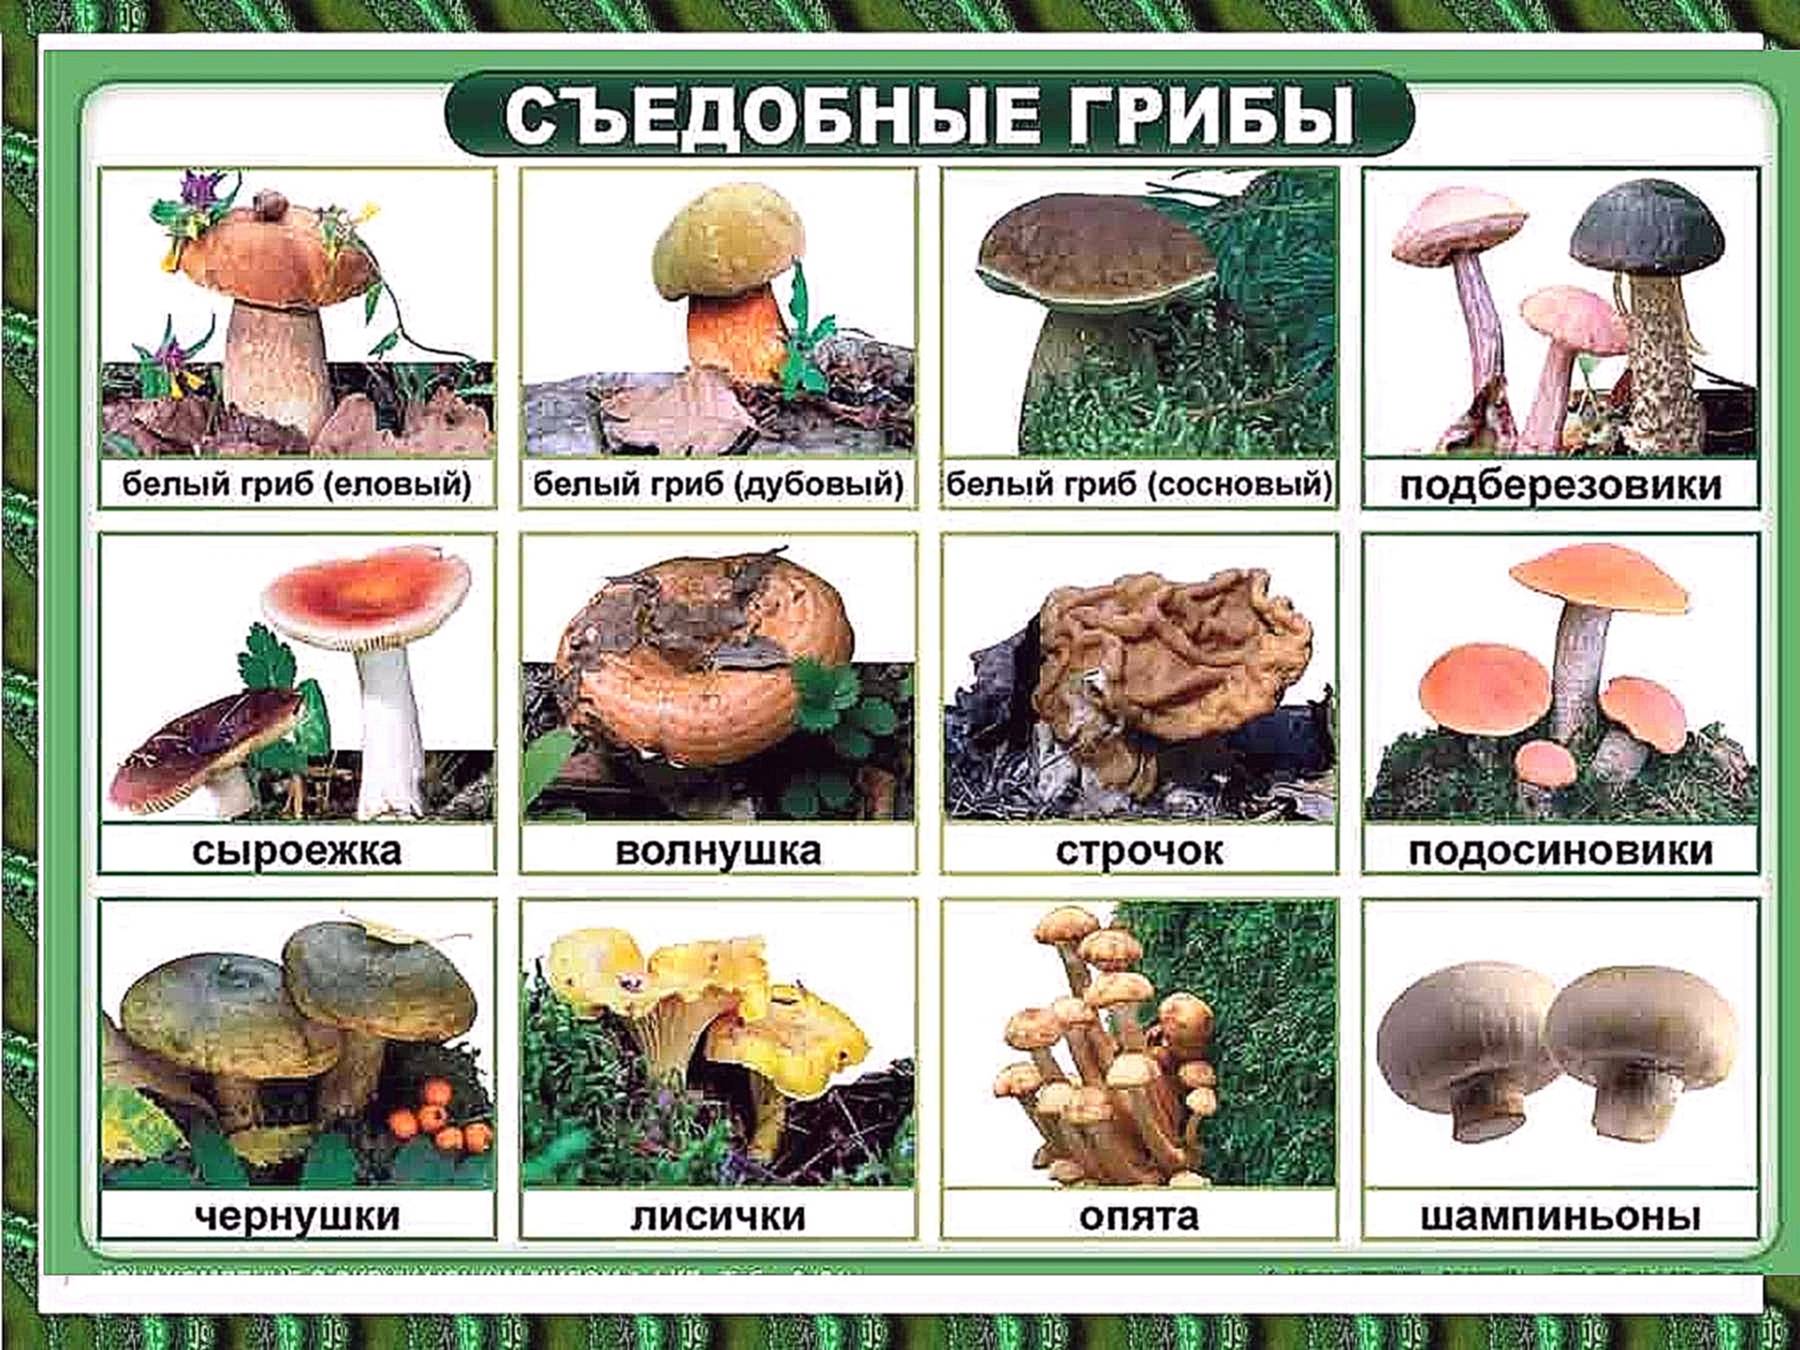 Индейка с грибами в духовке – четыре подробных рецепта с фото